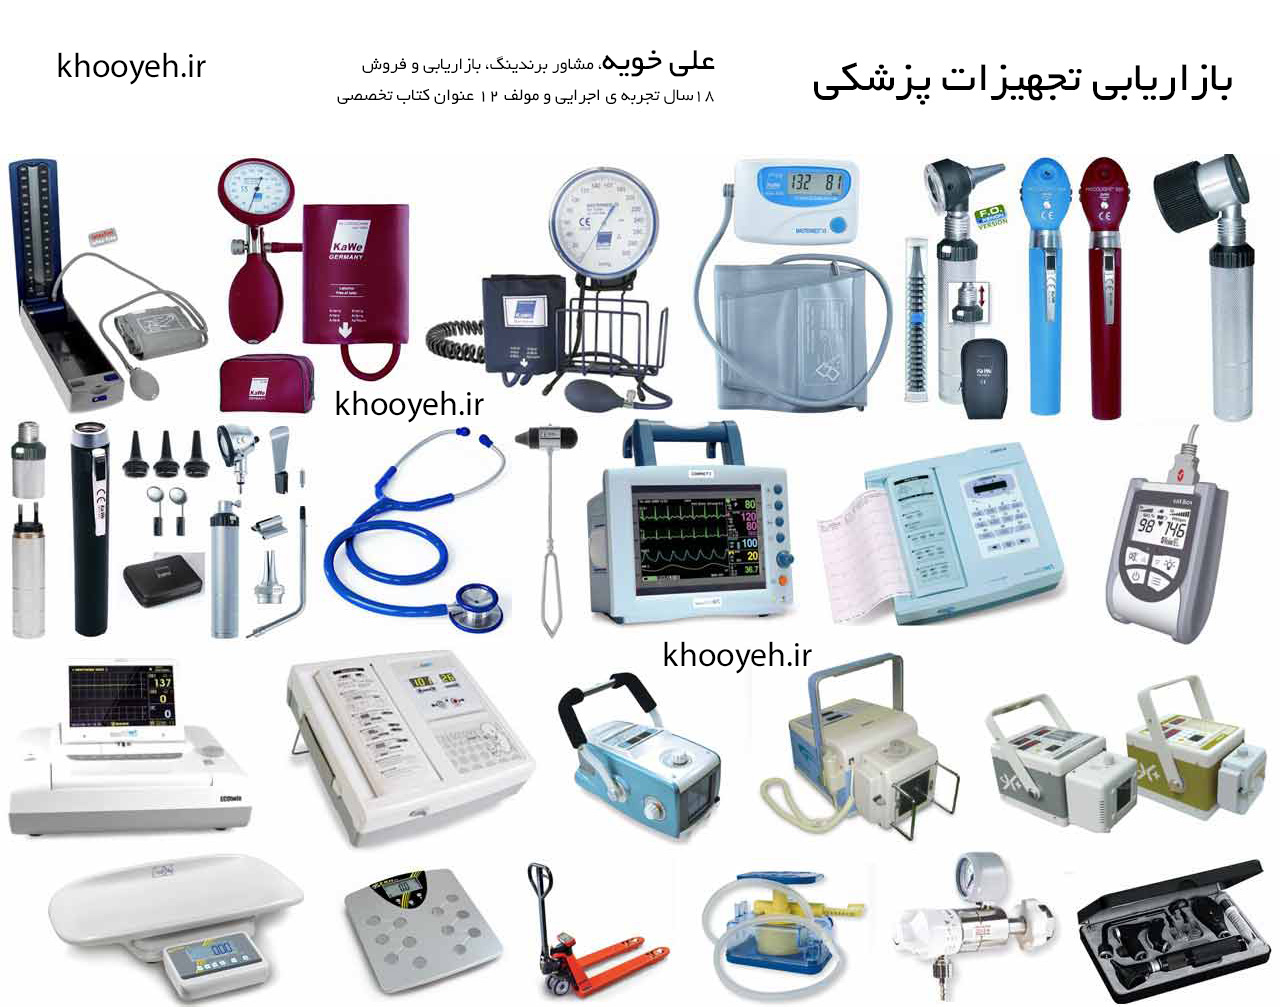  بازاریابی و برندسازی  تجهیزات پزشکی (medical equipment)، لوازم پزشکی، آزمایشگاهی، بیمارستانی 